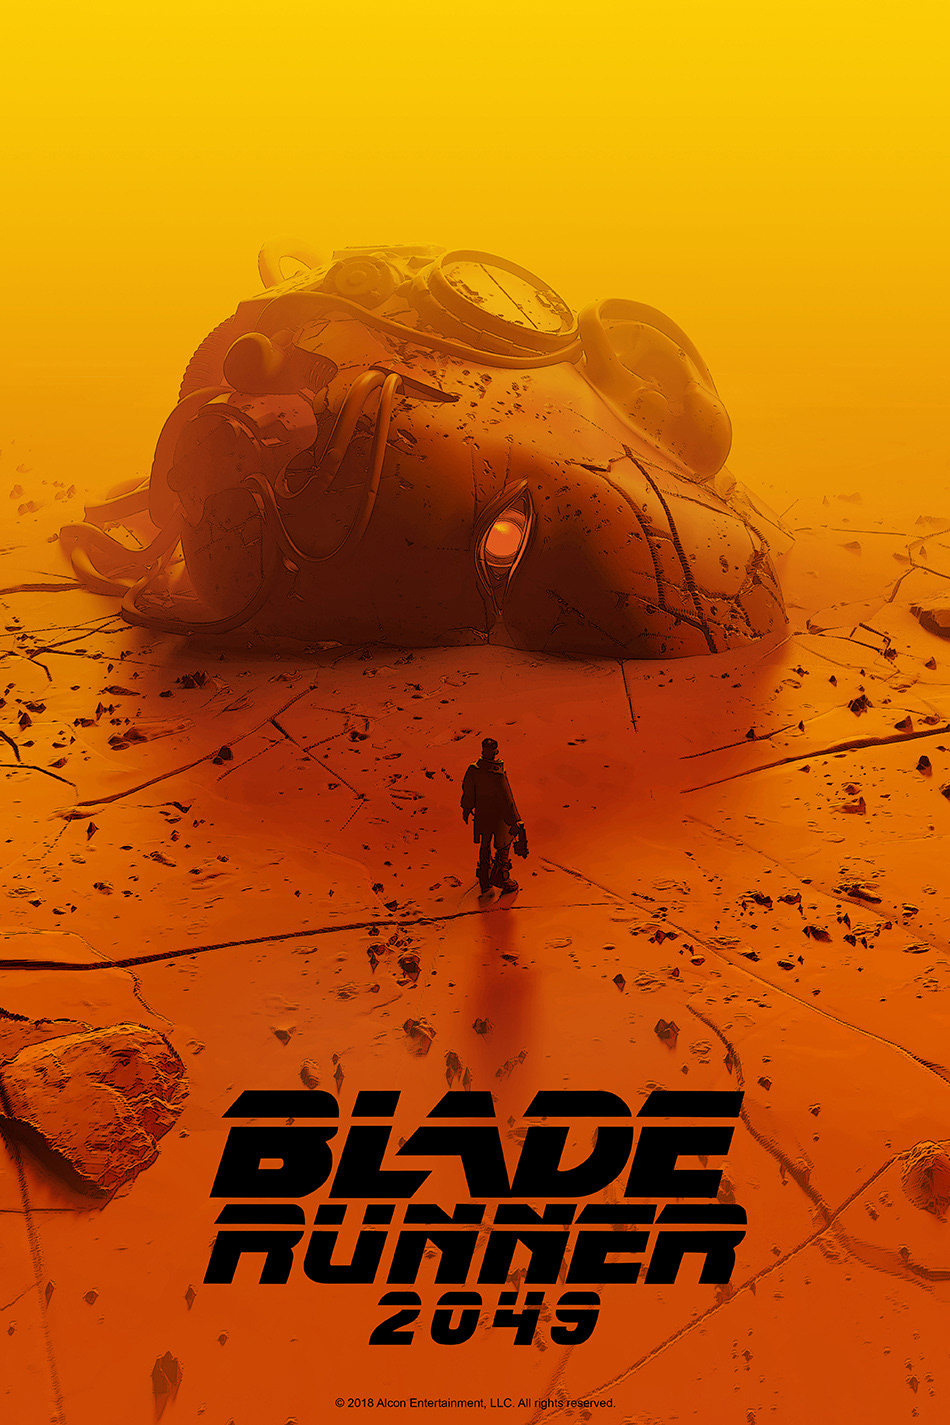 Bladerunner Cyberpunk poster art